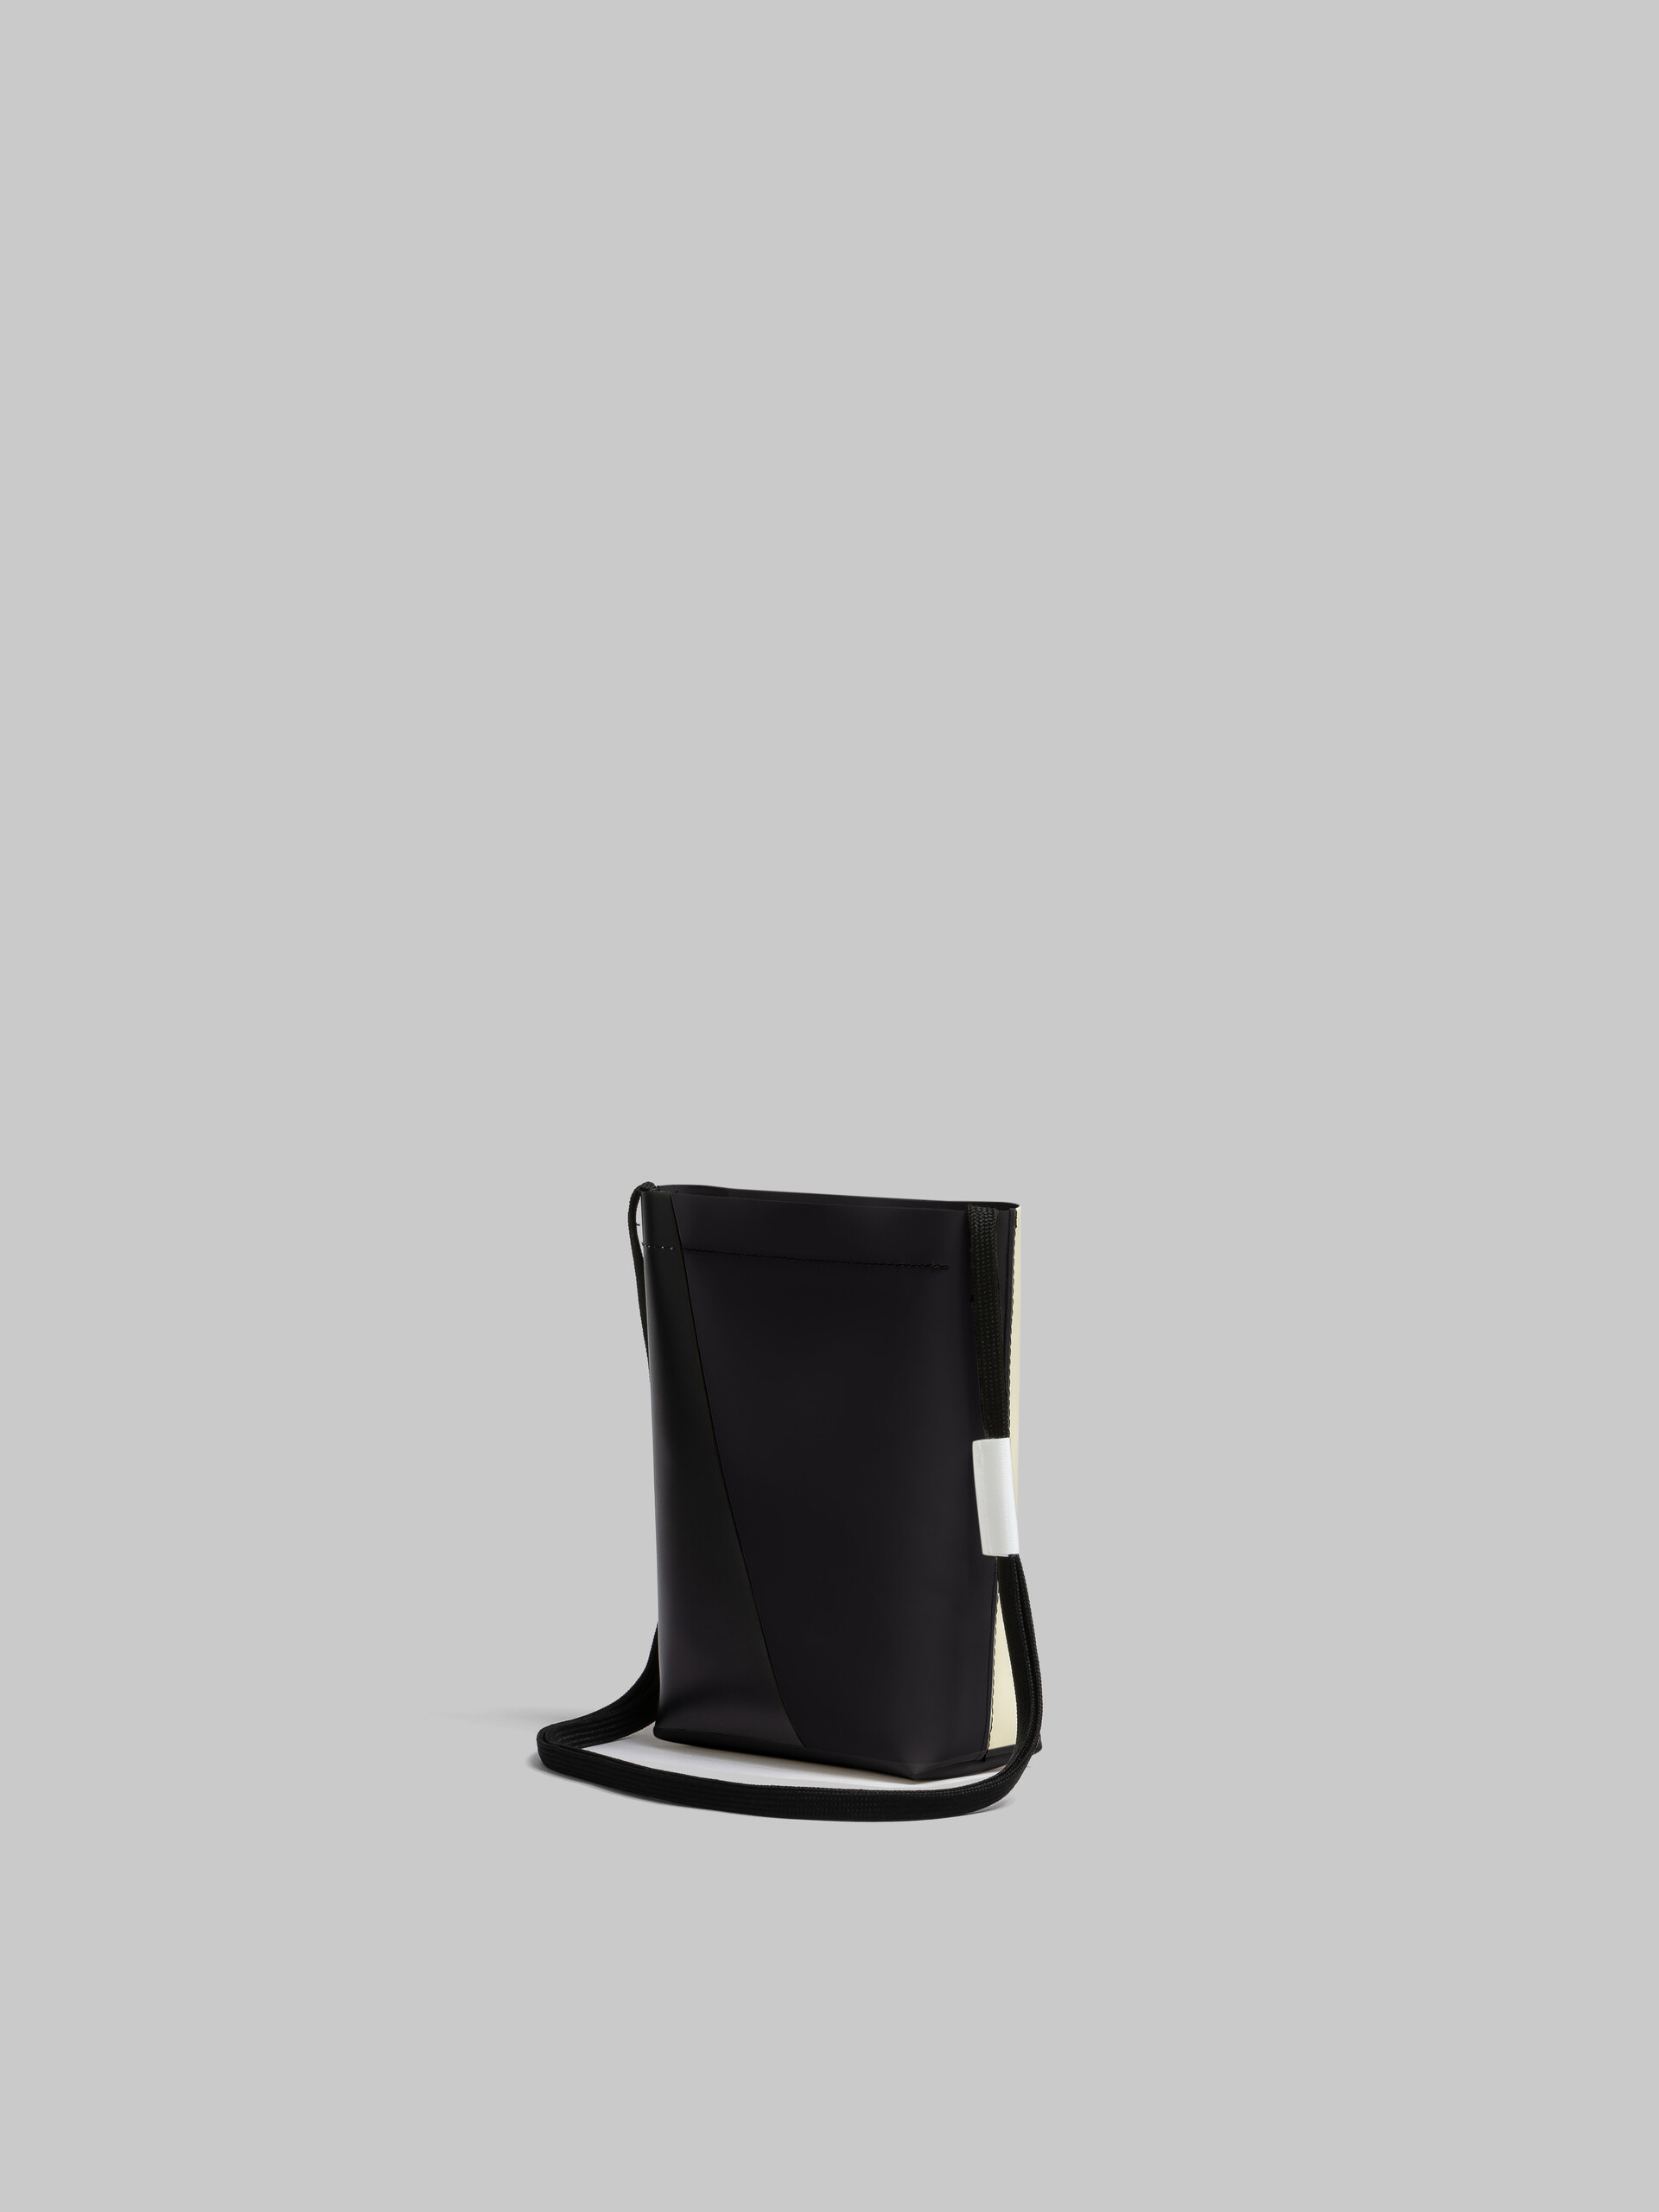 Sac à bandoulière Tribeca blanc et noir avec lanière en lacet - Sacs portés épaule - Image 3